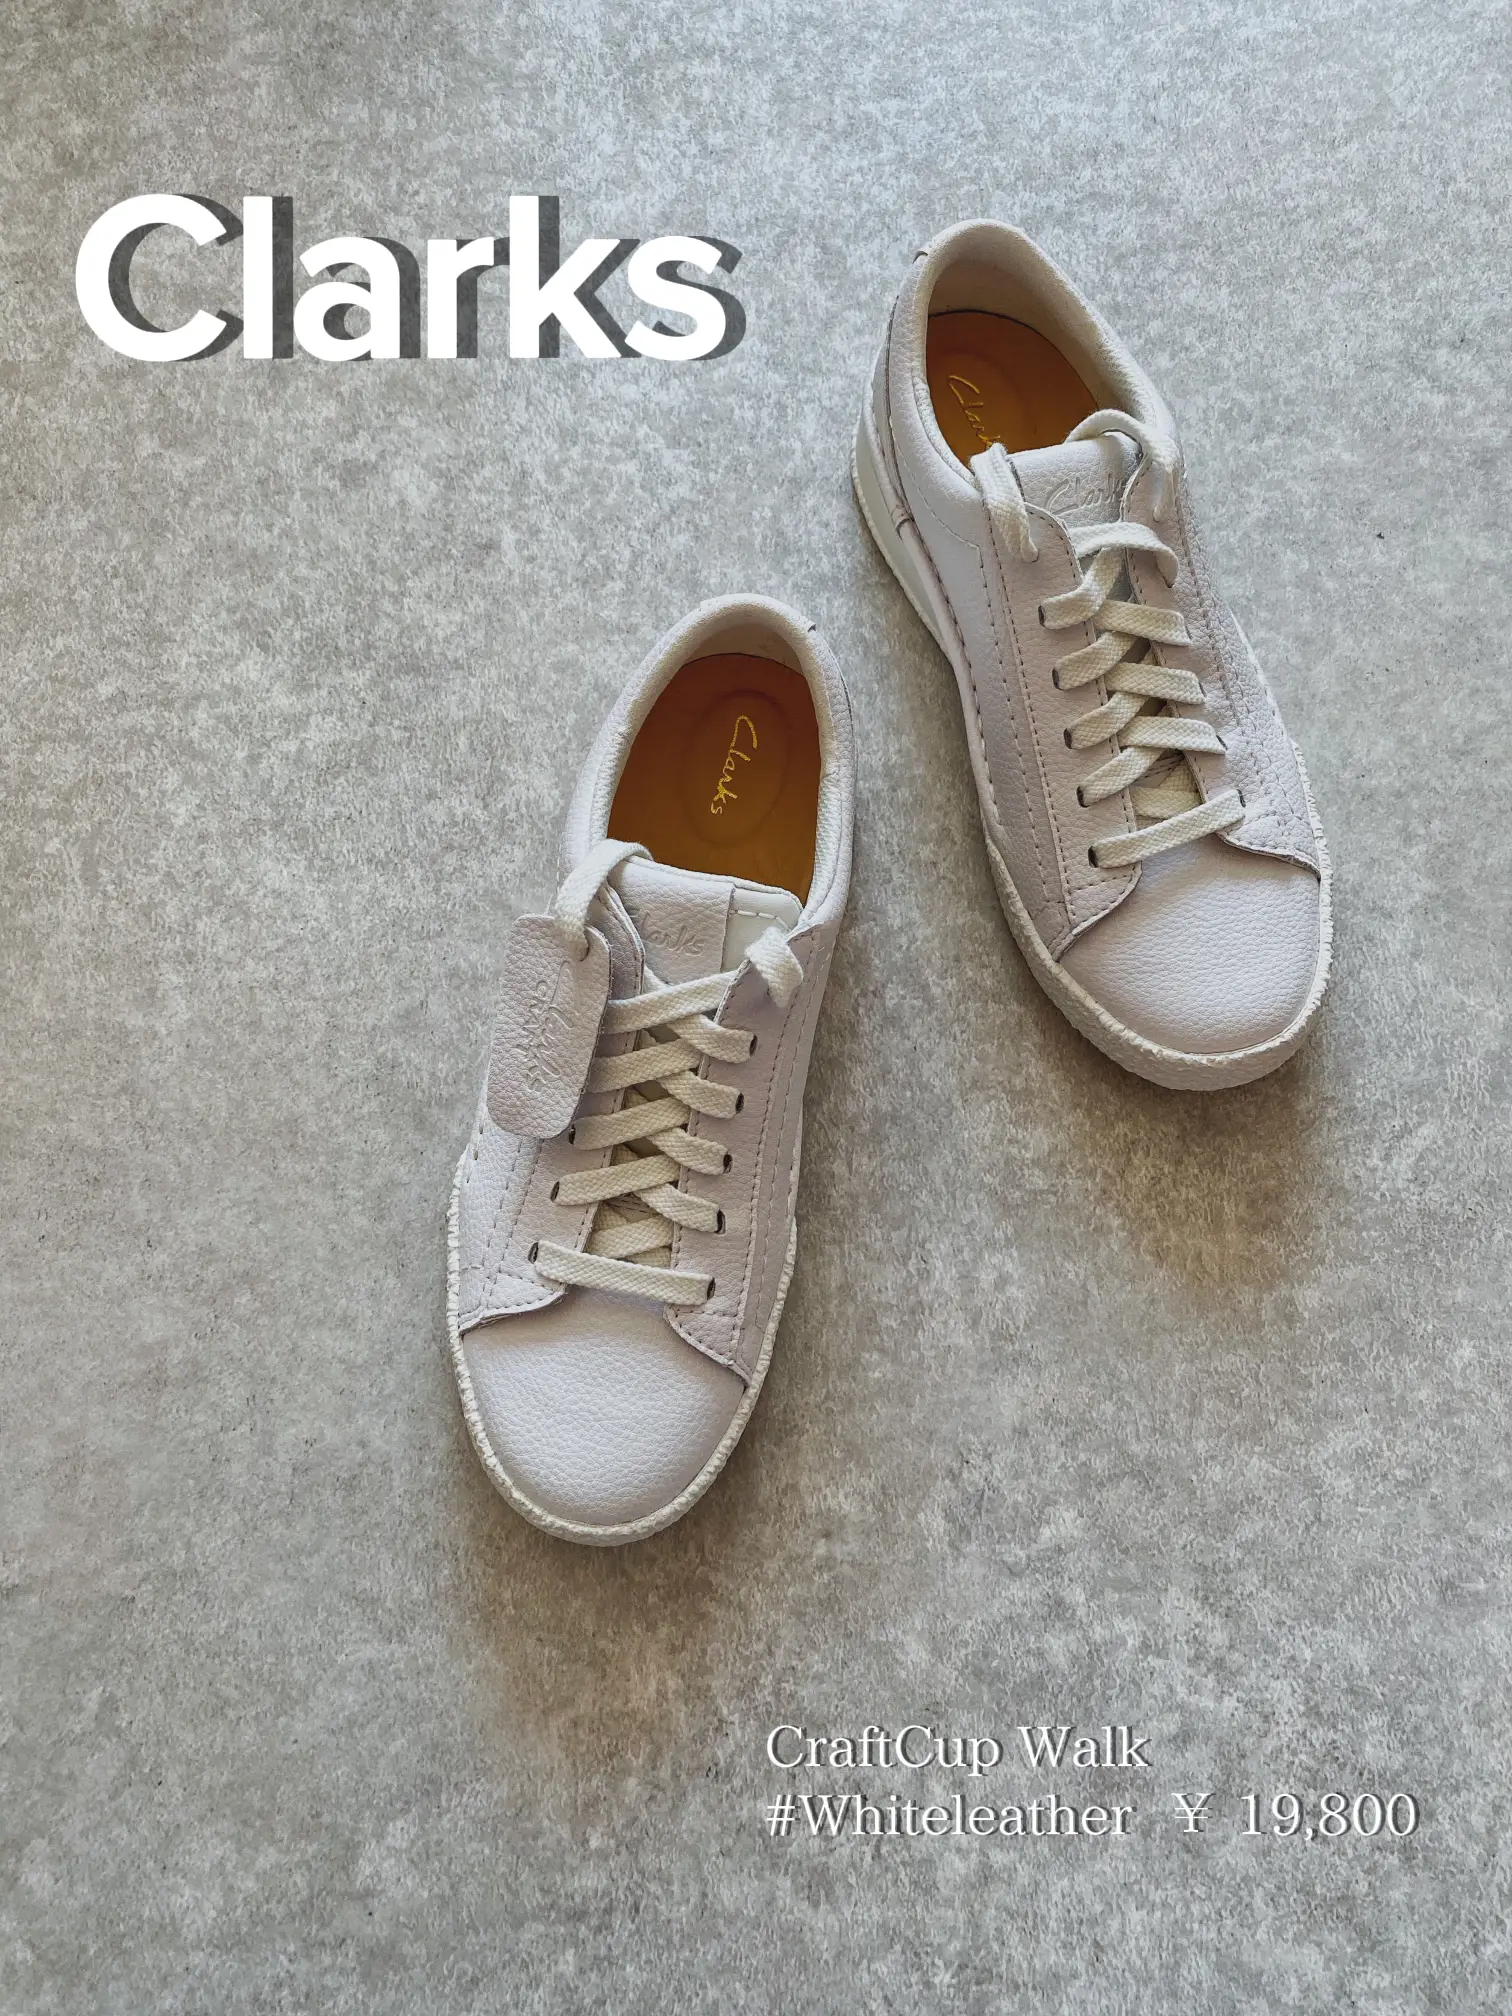 Clarks】大人が履きたいホワイトレザーのスニーカー👟   | Miiが投稿